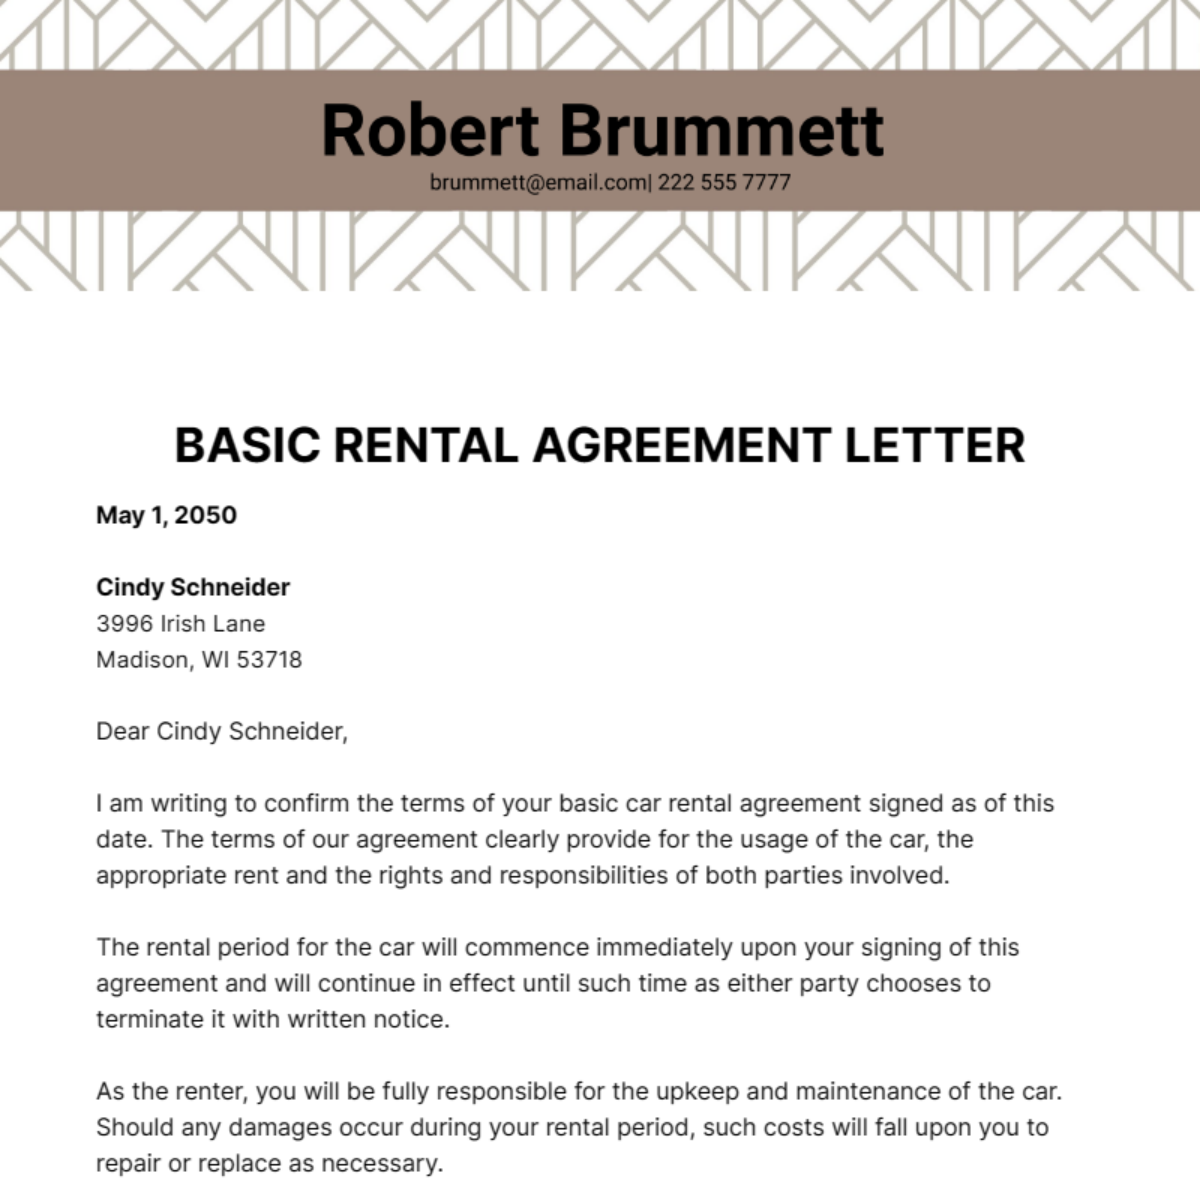 Basic Rental Agreement Letter Template